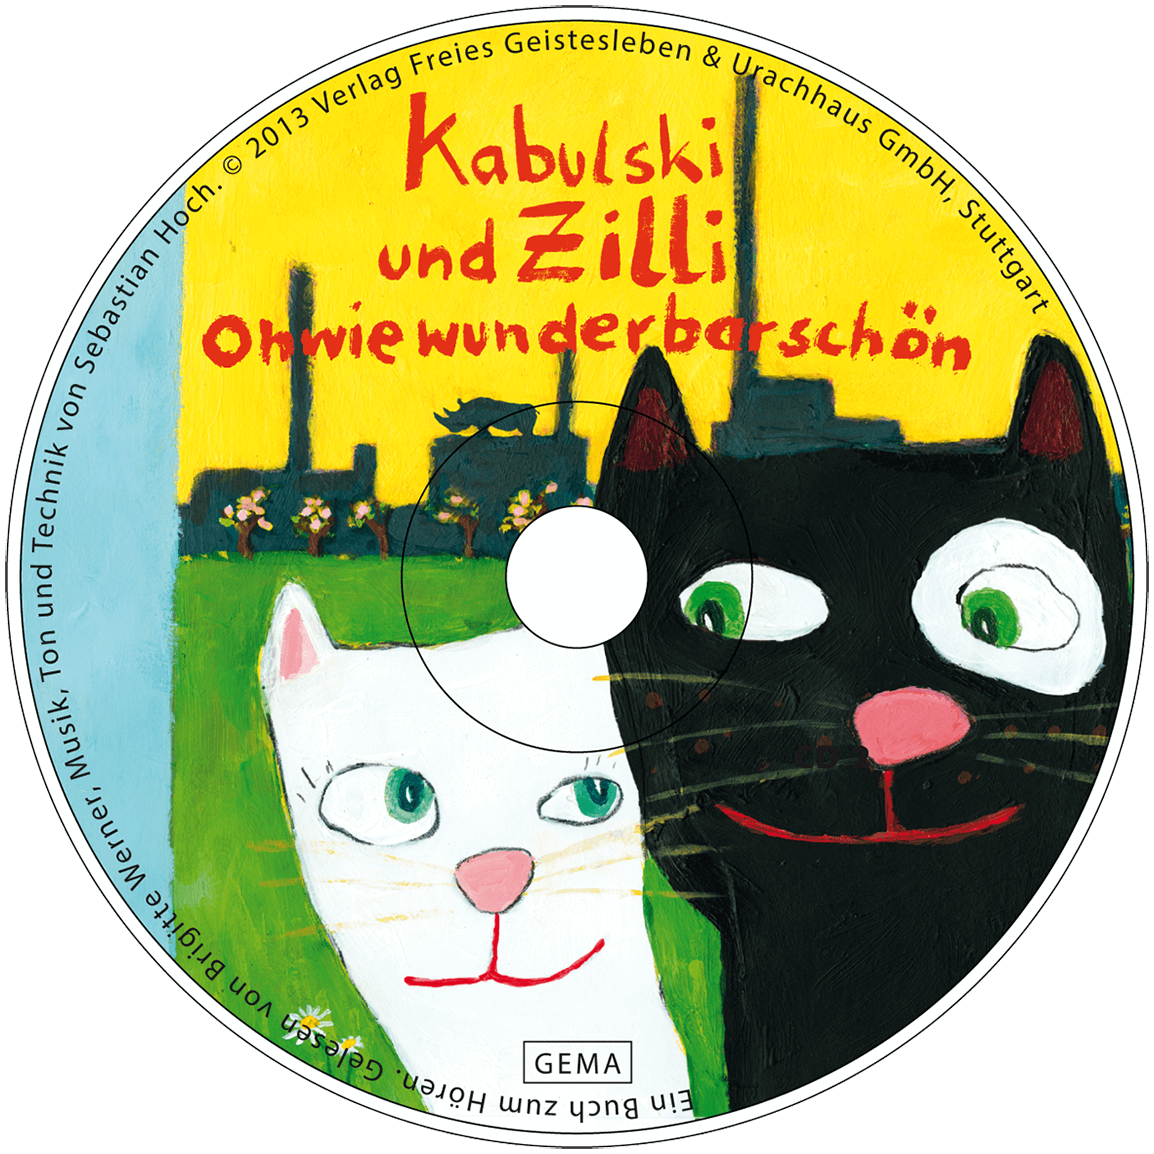 Kabulski und Zilli-Ohwiewunderbarschön - ein Hörbuch | Brigitte Werner und Sebastian Hoch